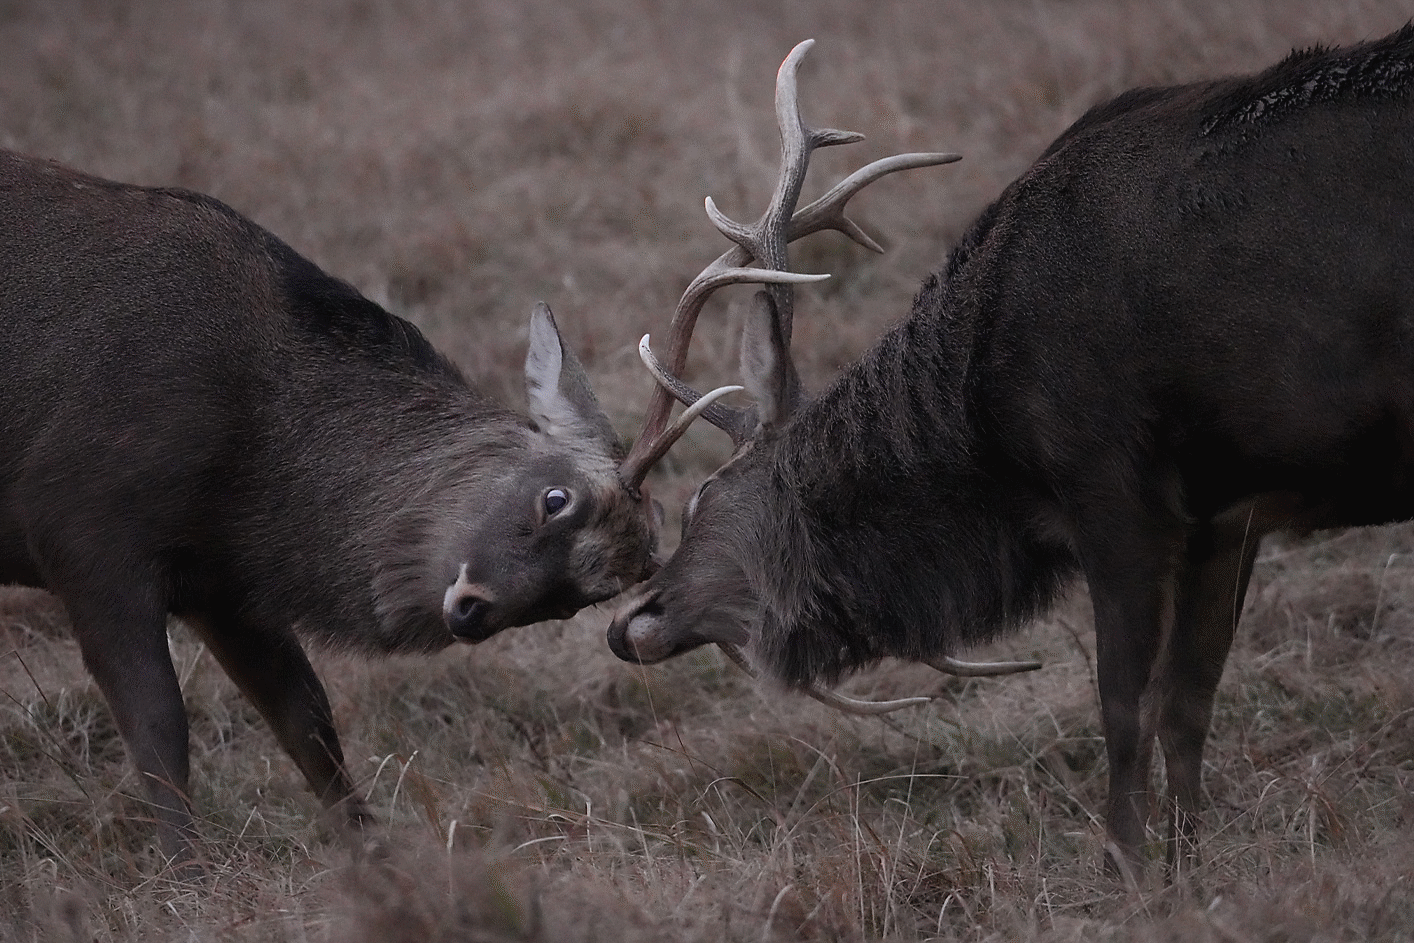 Two deer fighting